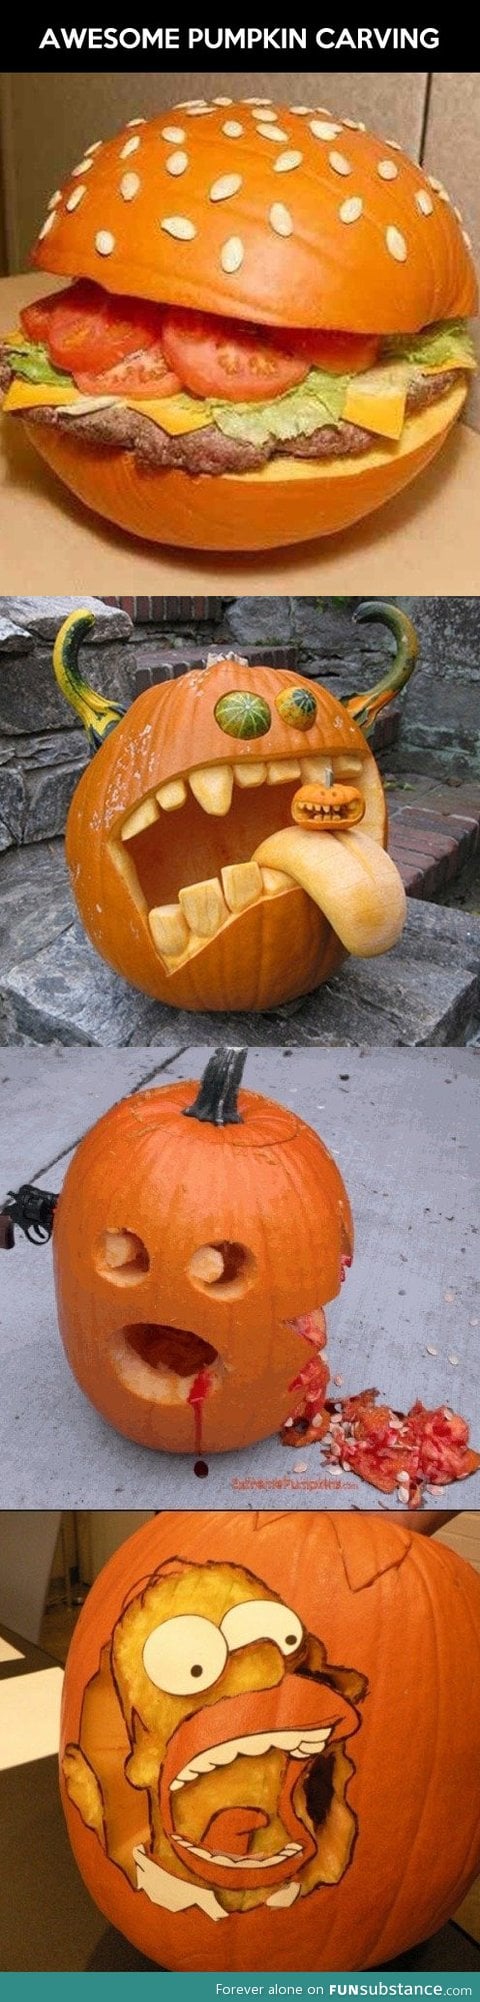 Advanced pumpkin carving